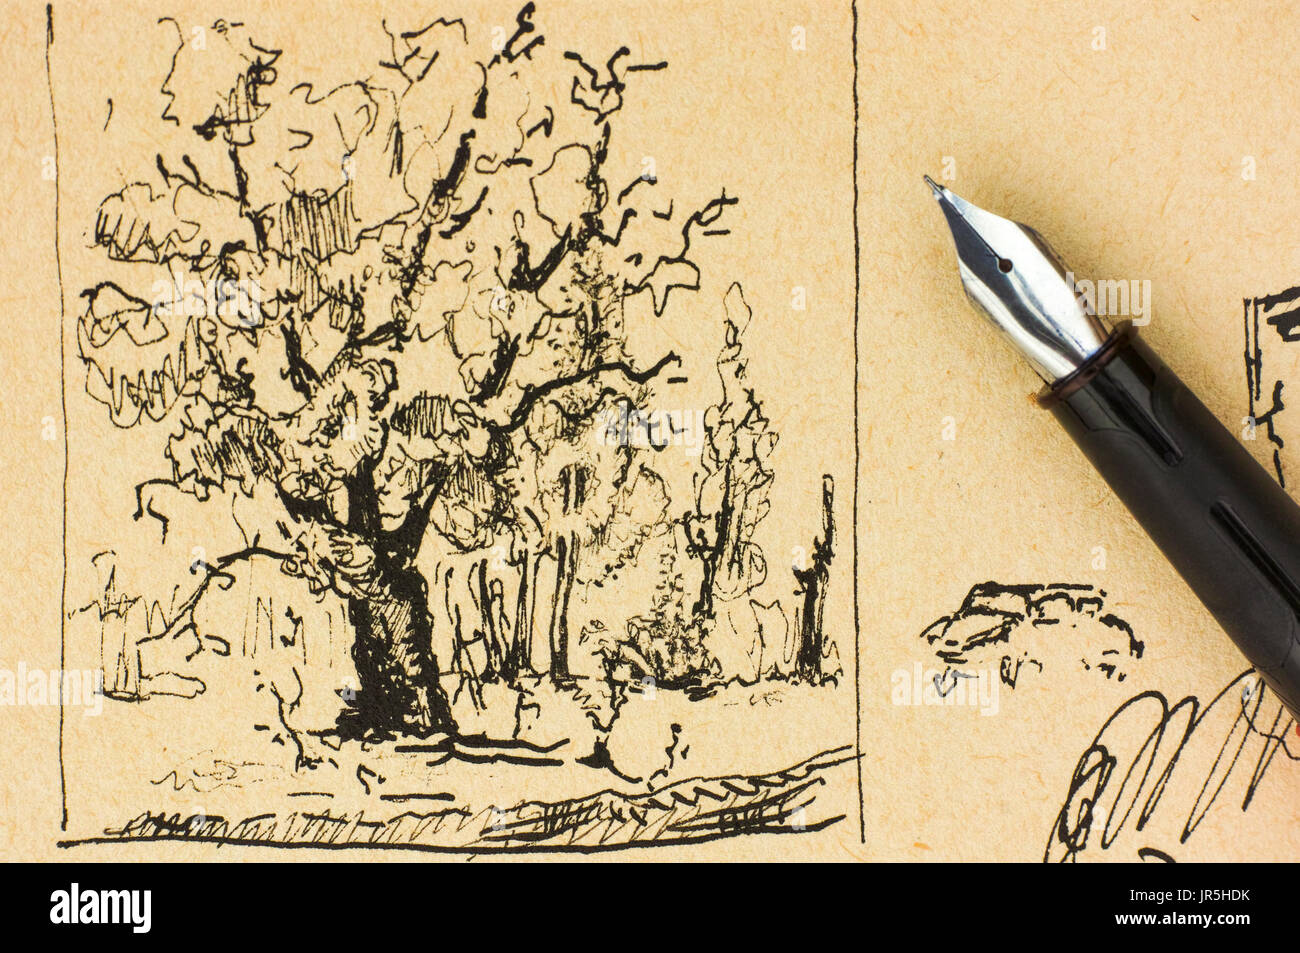 Baum zeichnen von Tinte mit Füllfederhalter Stockfotografie - Alamy